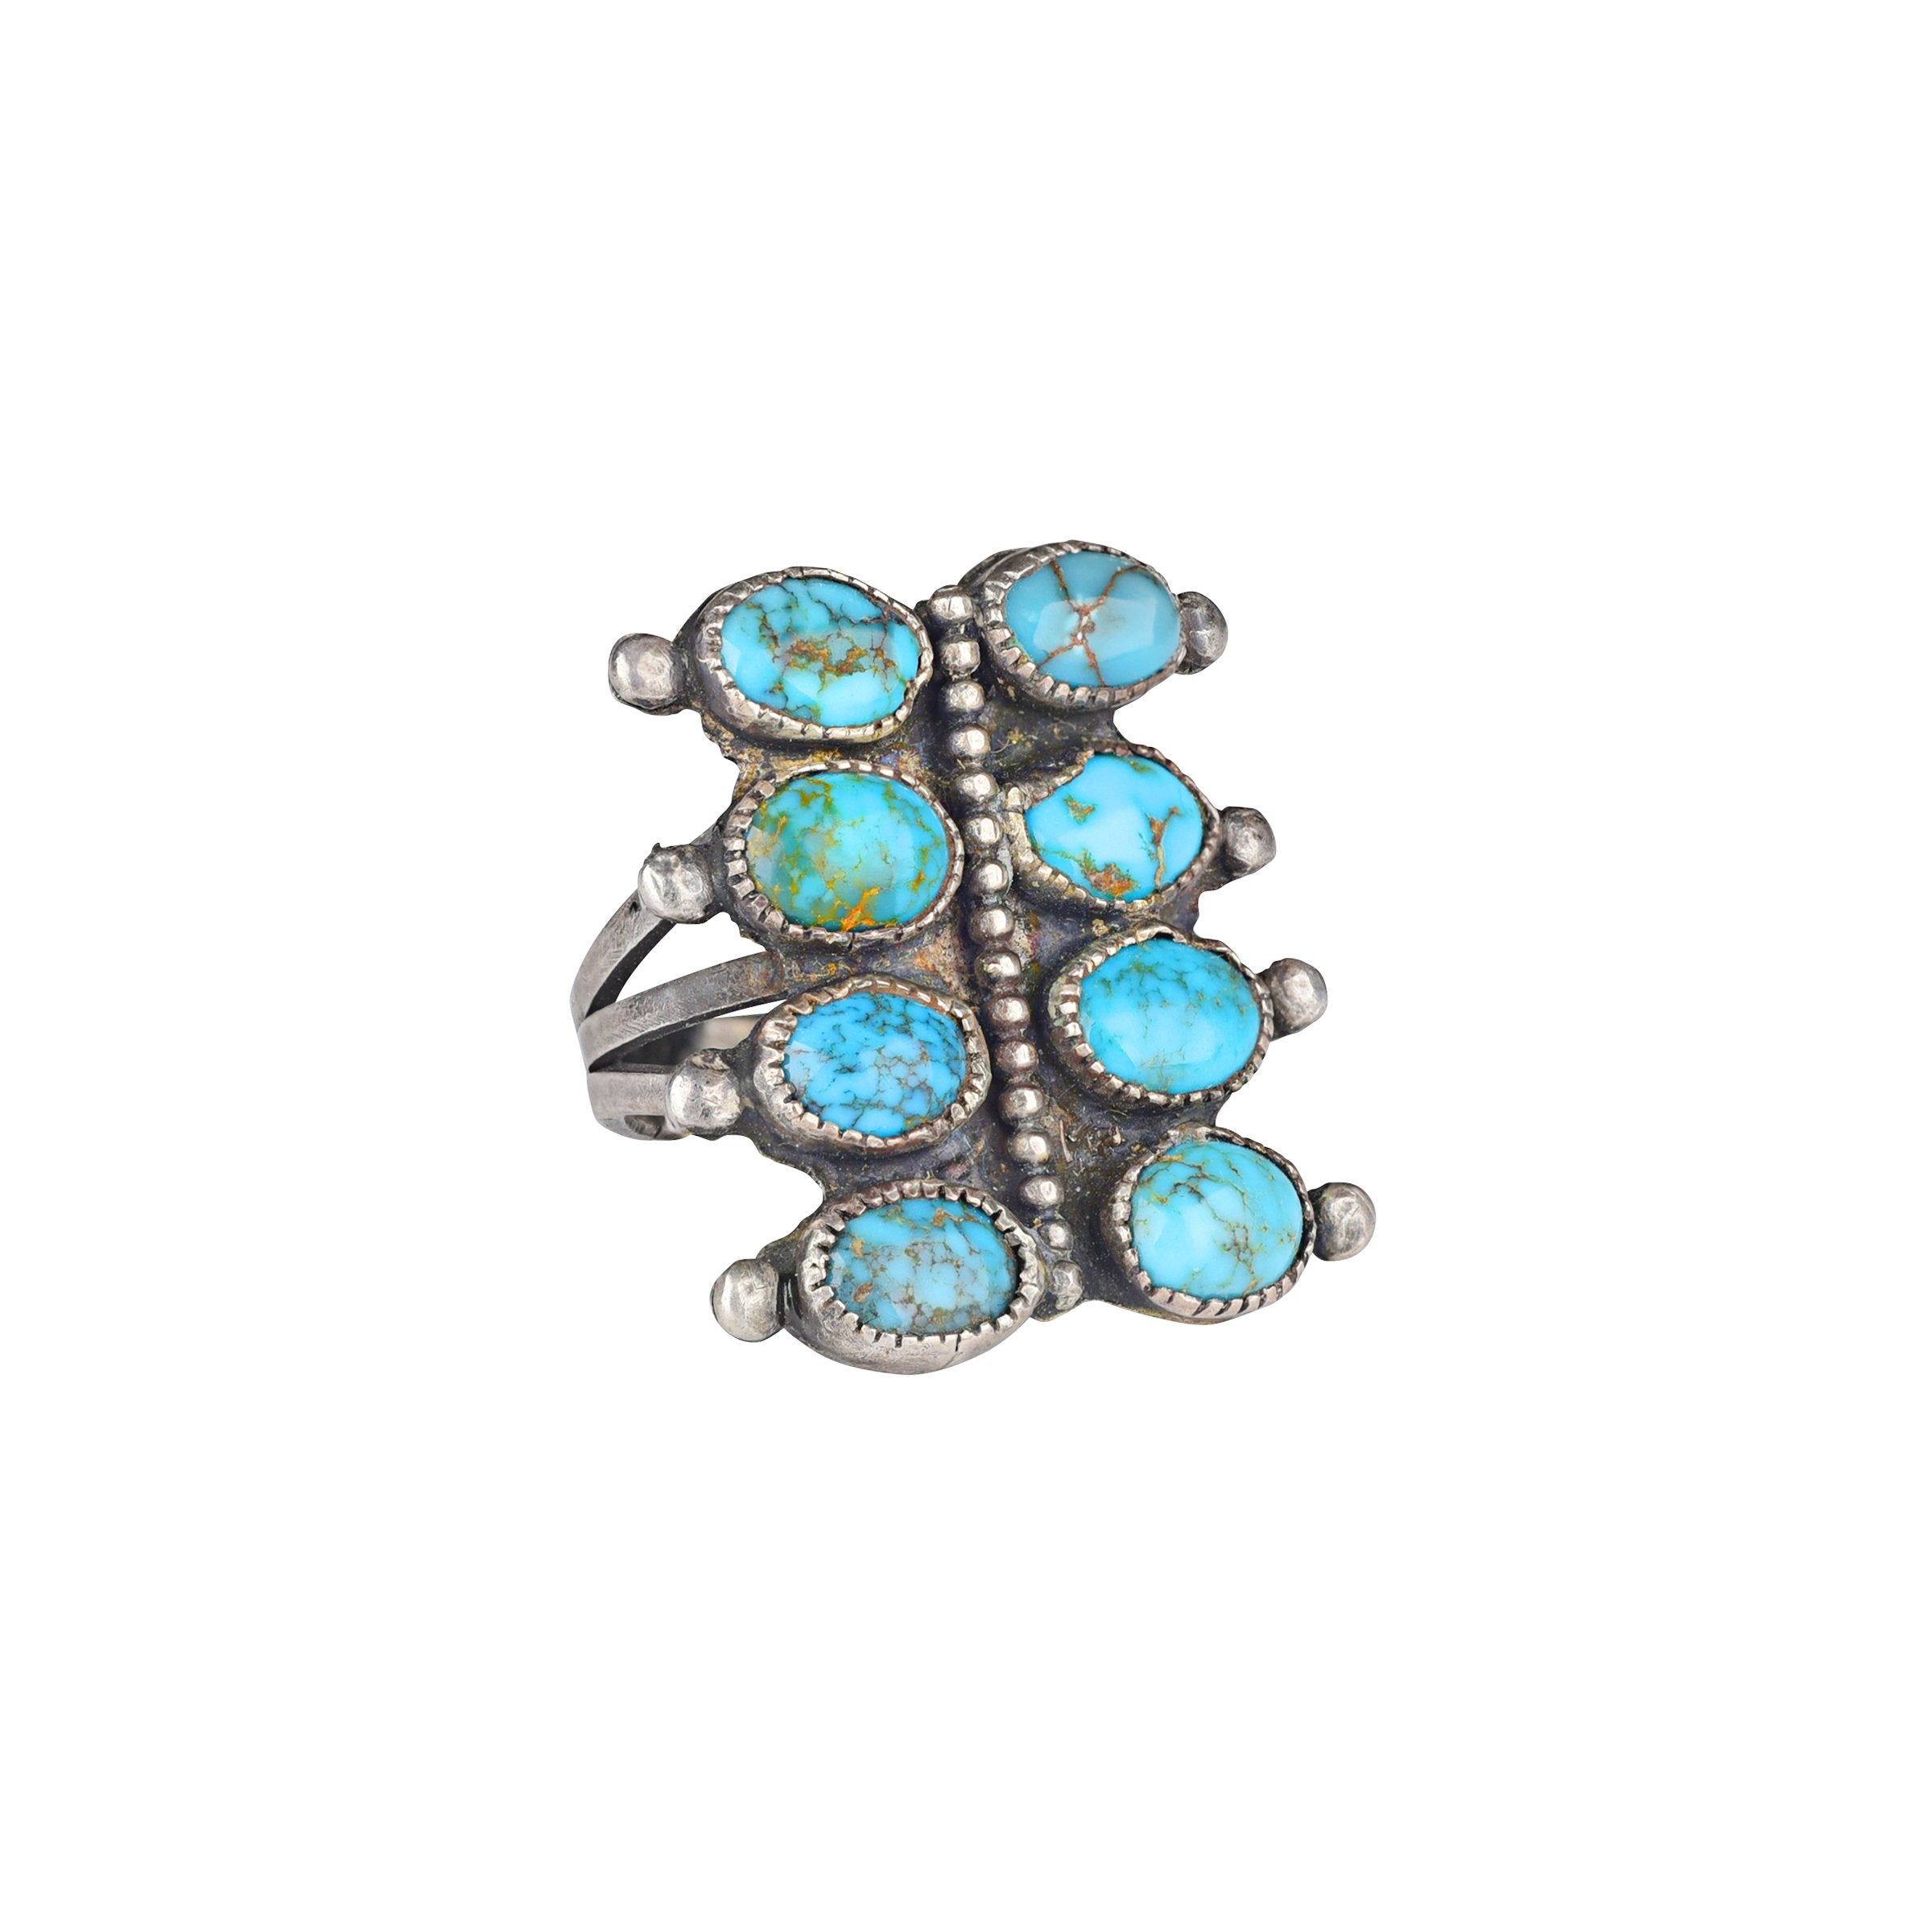 Vintage Navajo 8 Stone Ring - Size 7